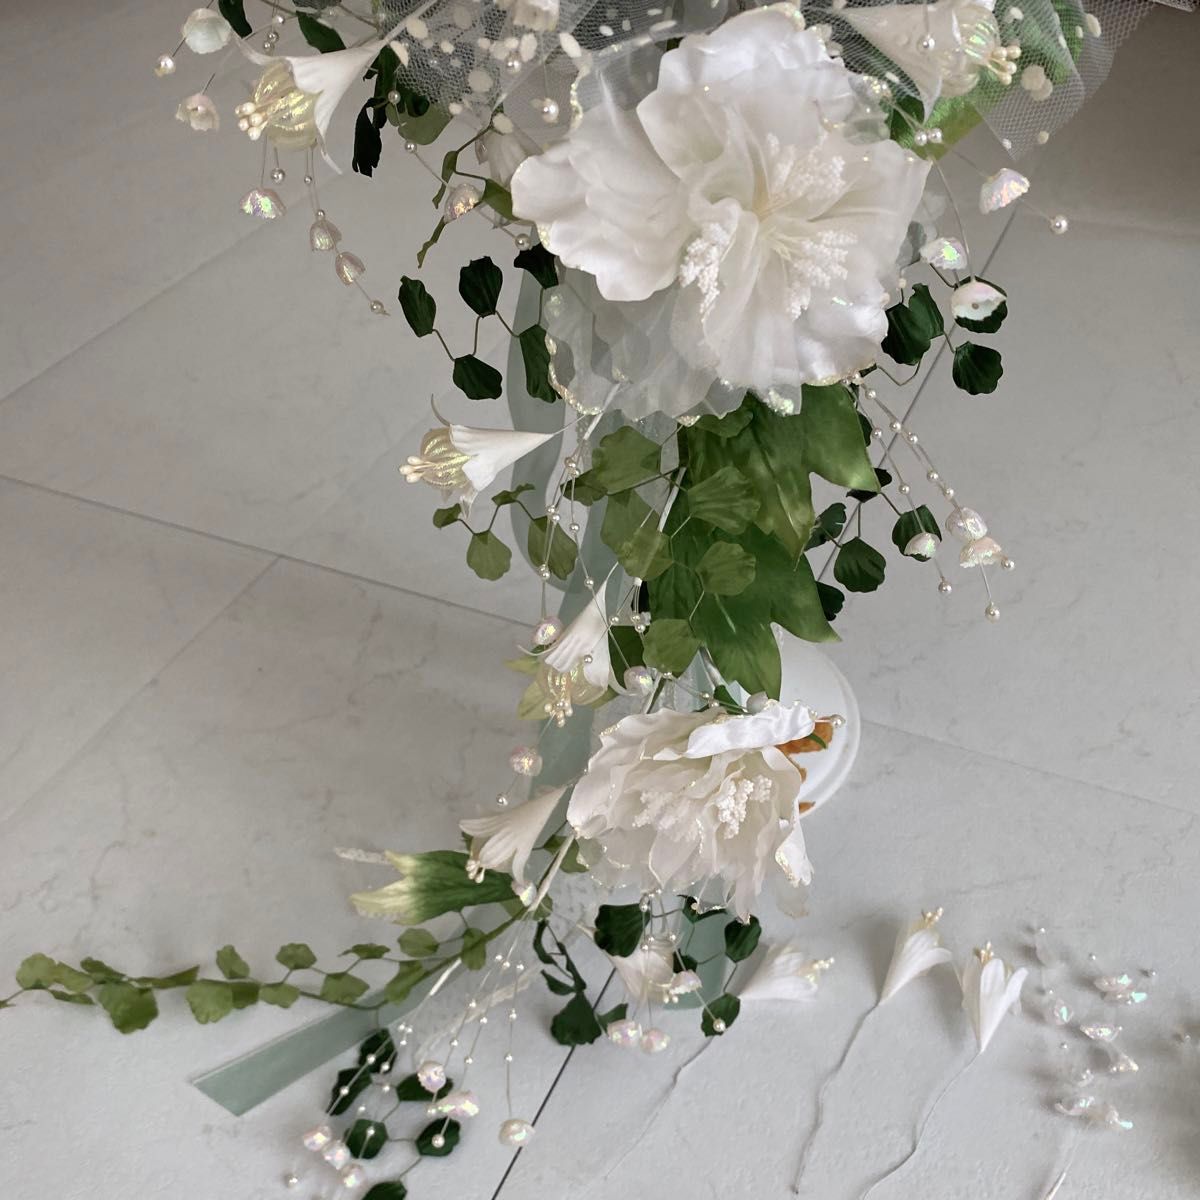 ウエディングブーケ 、コサージュ、髪飾りのセット花束 造花 挙式 結婚式撮影